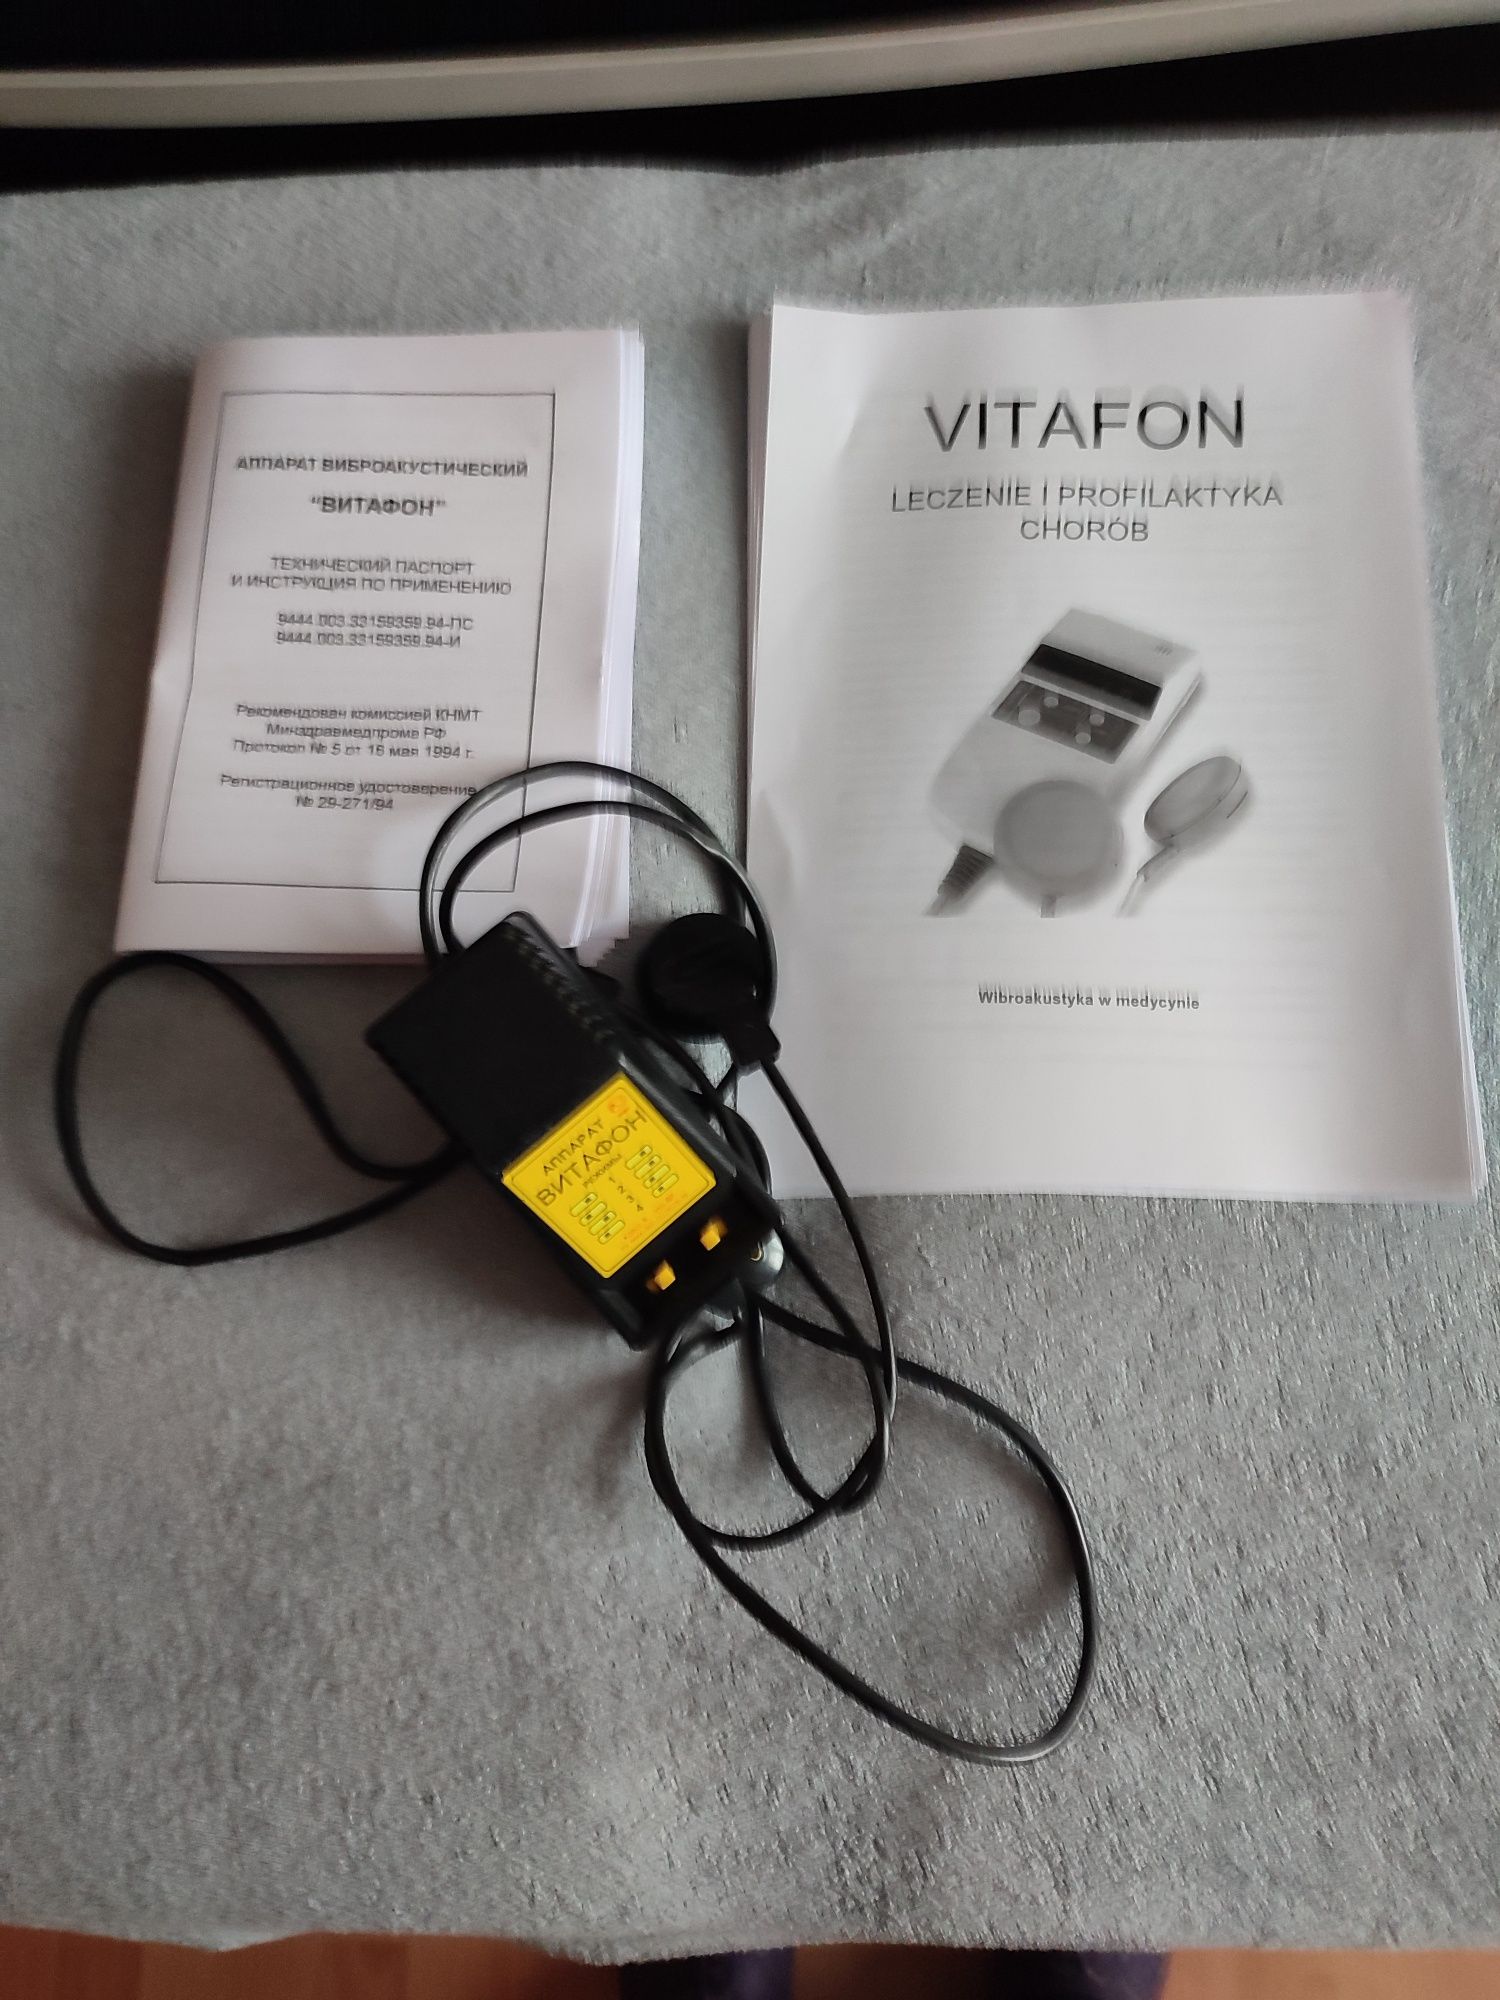 Vitafon urządzenie wibroakustyczne